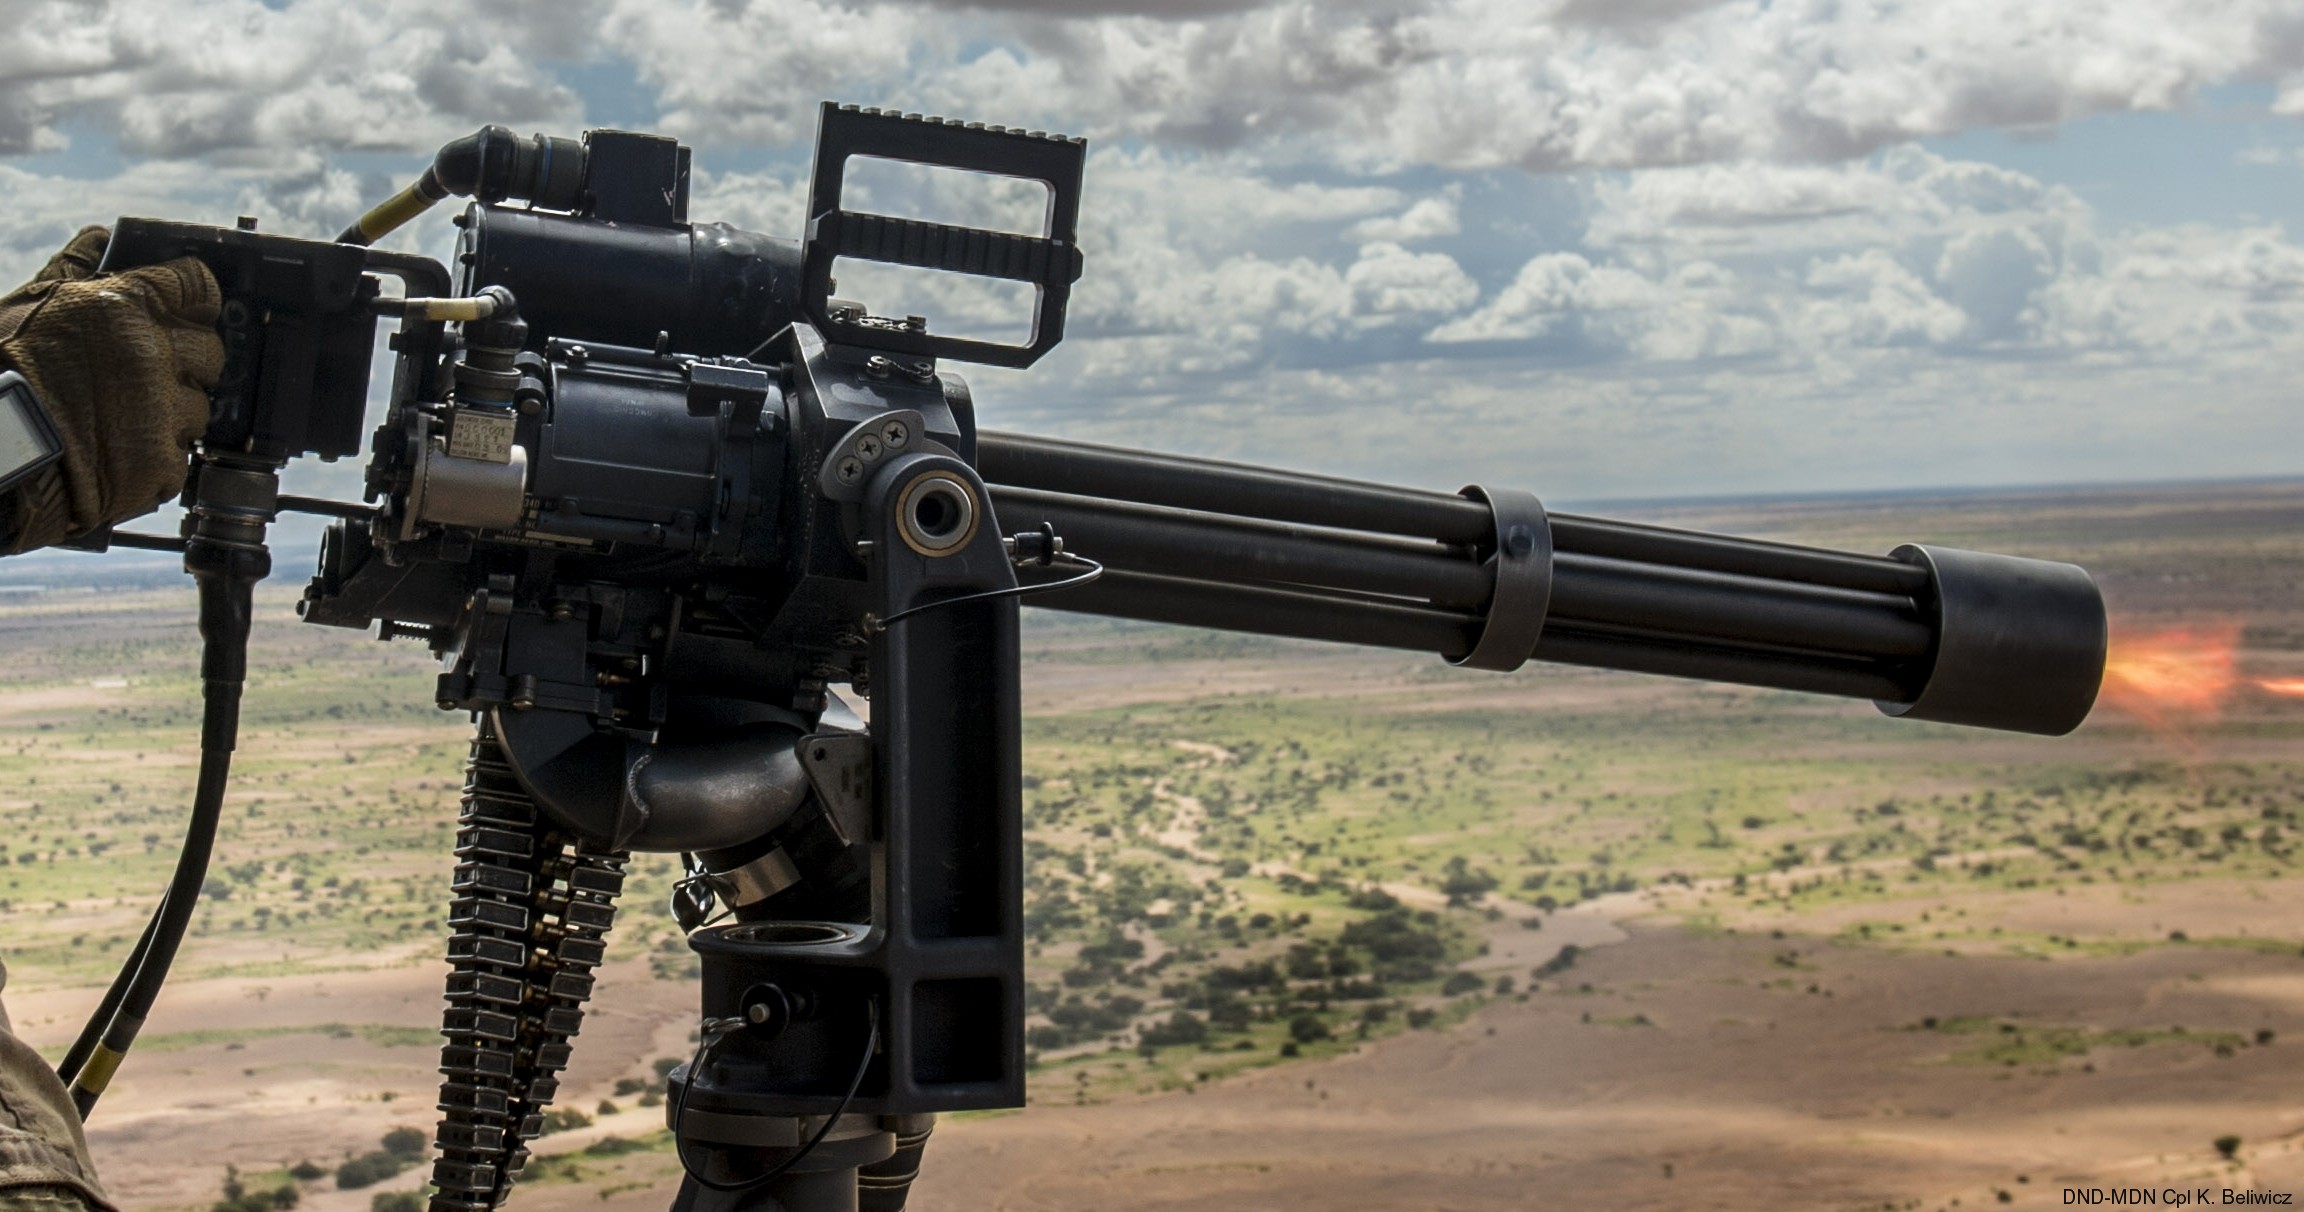 M134 Mk.44 GAU-17A Minigun rotary machine gun system